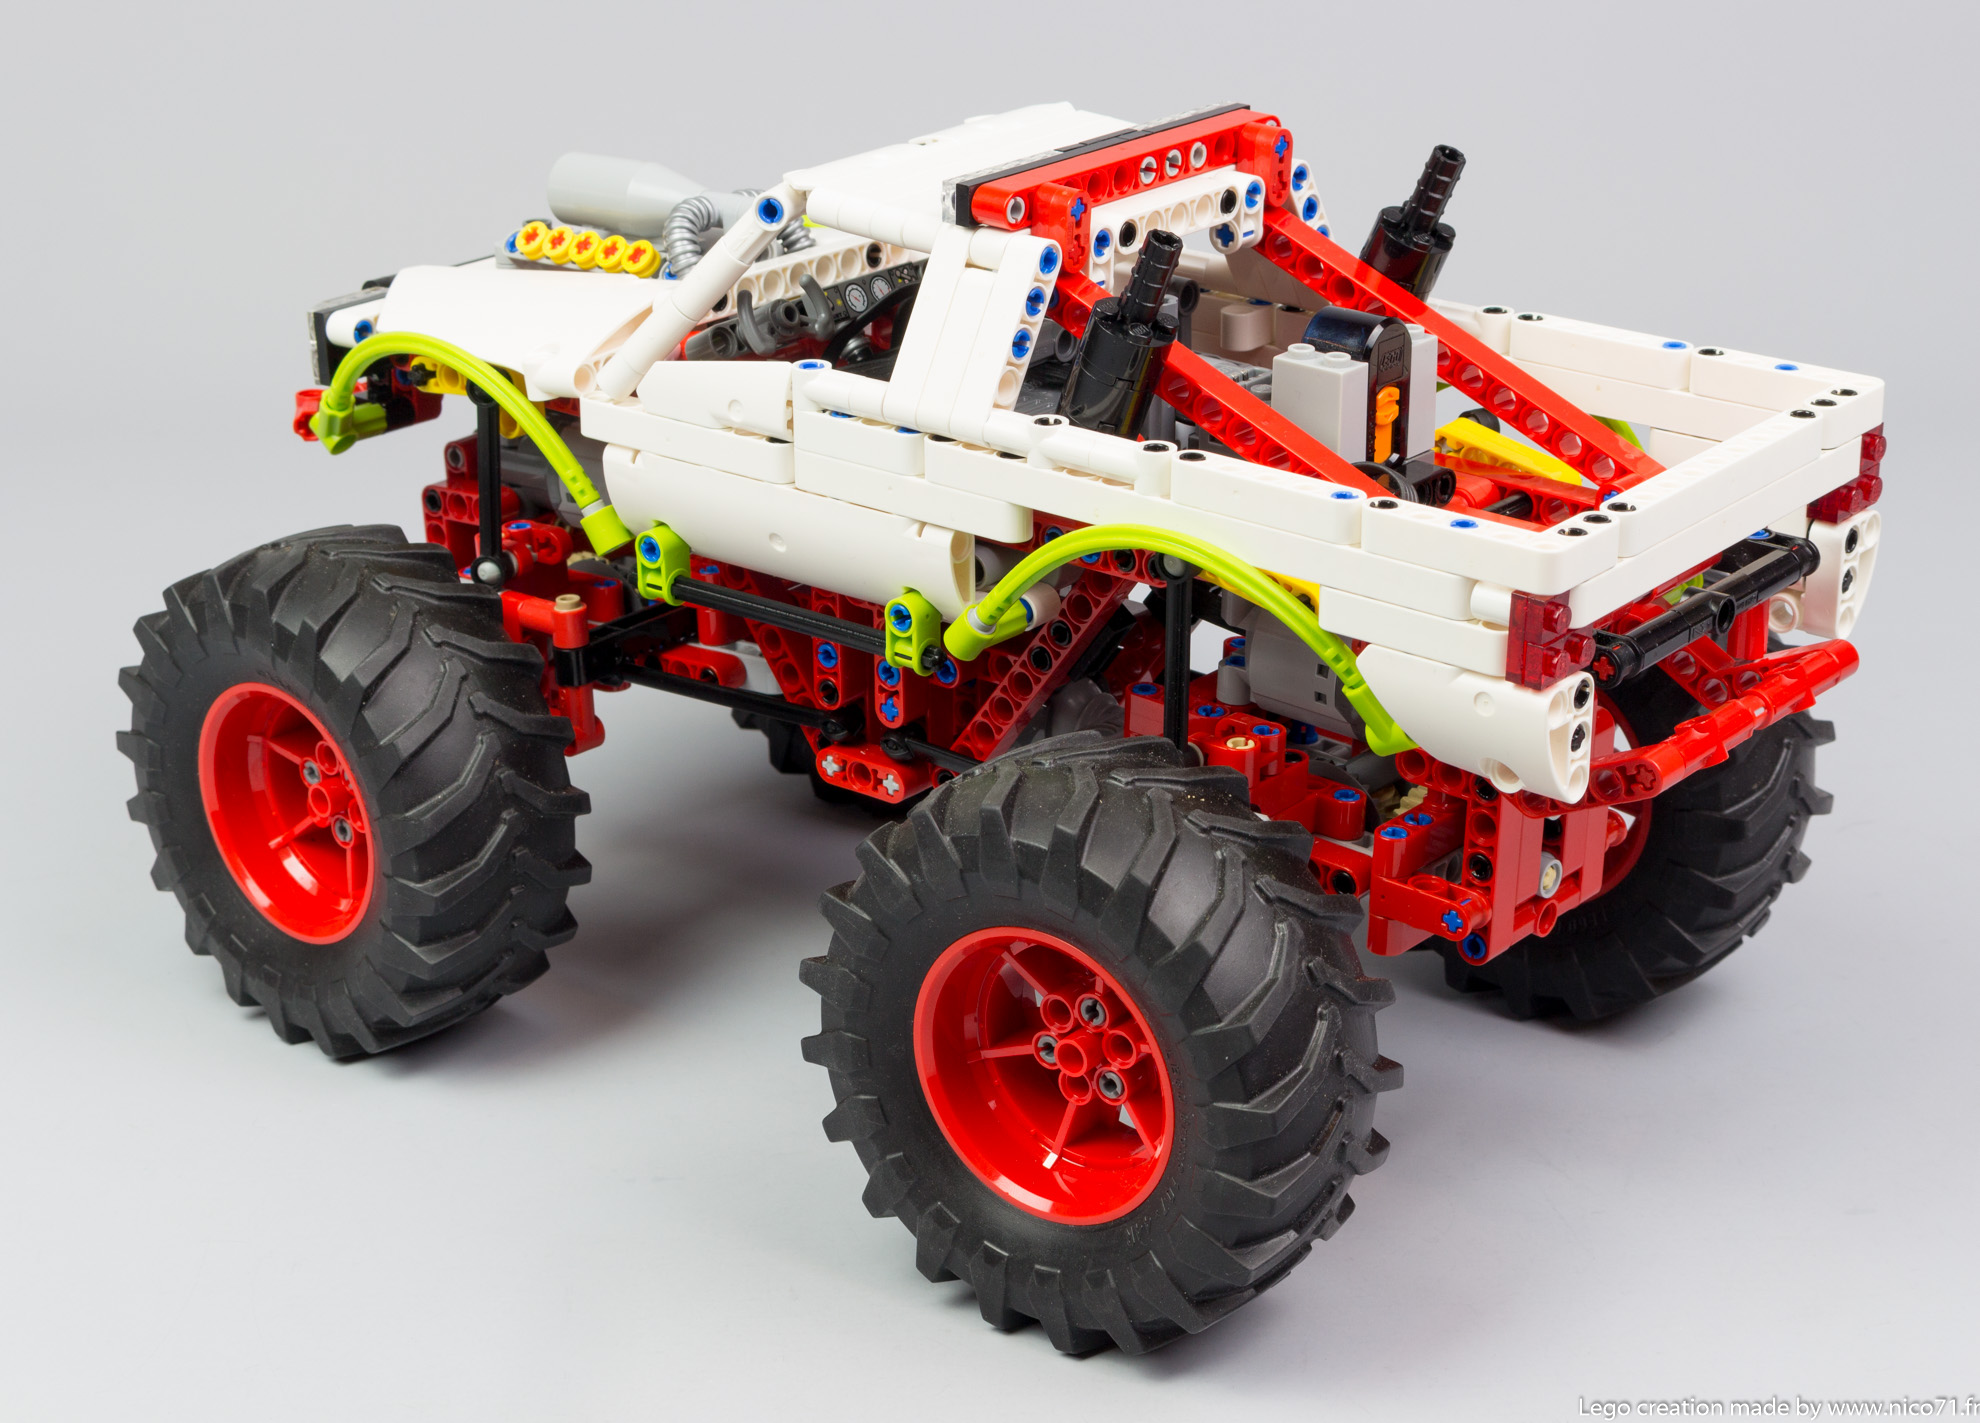 civilisation brutalt hensynsfuld LEGO MOC Monster Truck by Nico71 | Rebrickable - Build with LEGO